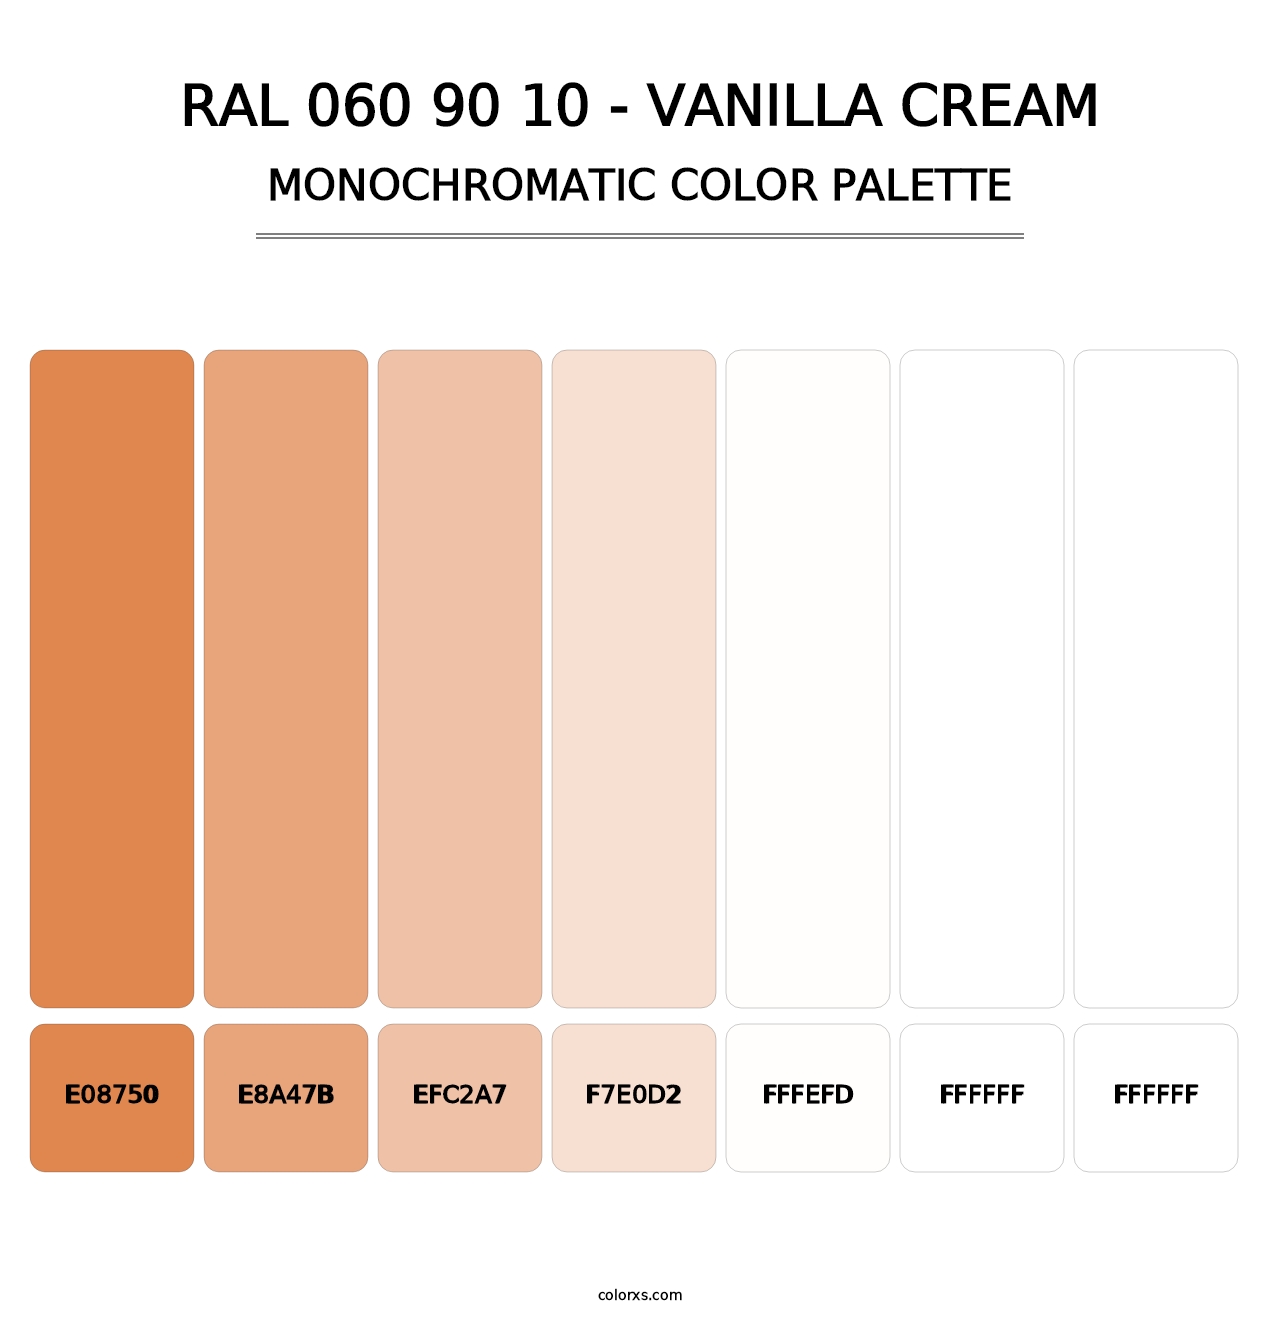 RAL 060 90 10 - Vanilla Cream - Monochromatic Color Palette